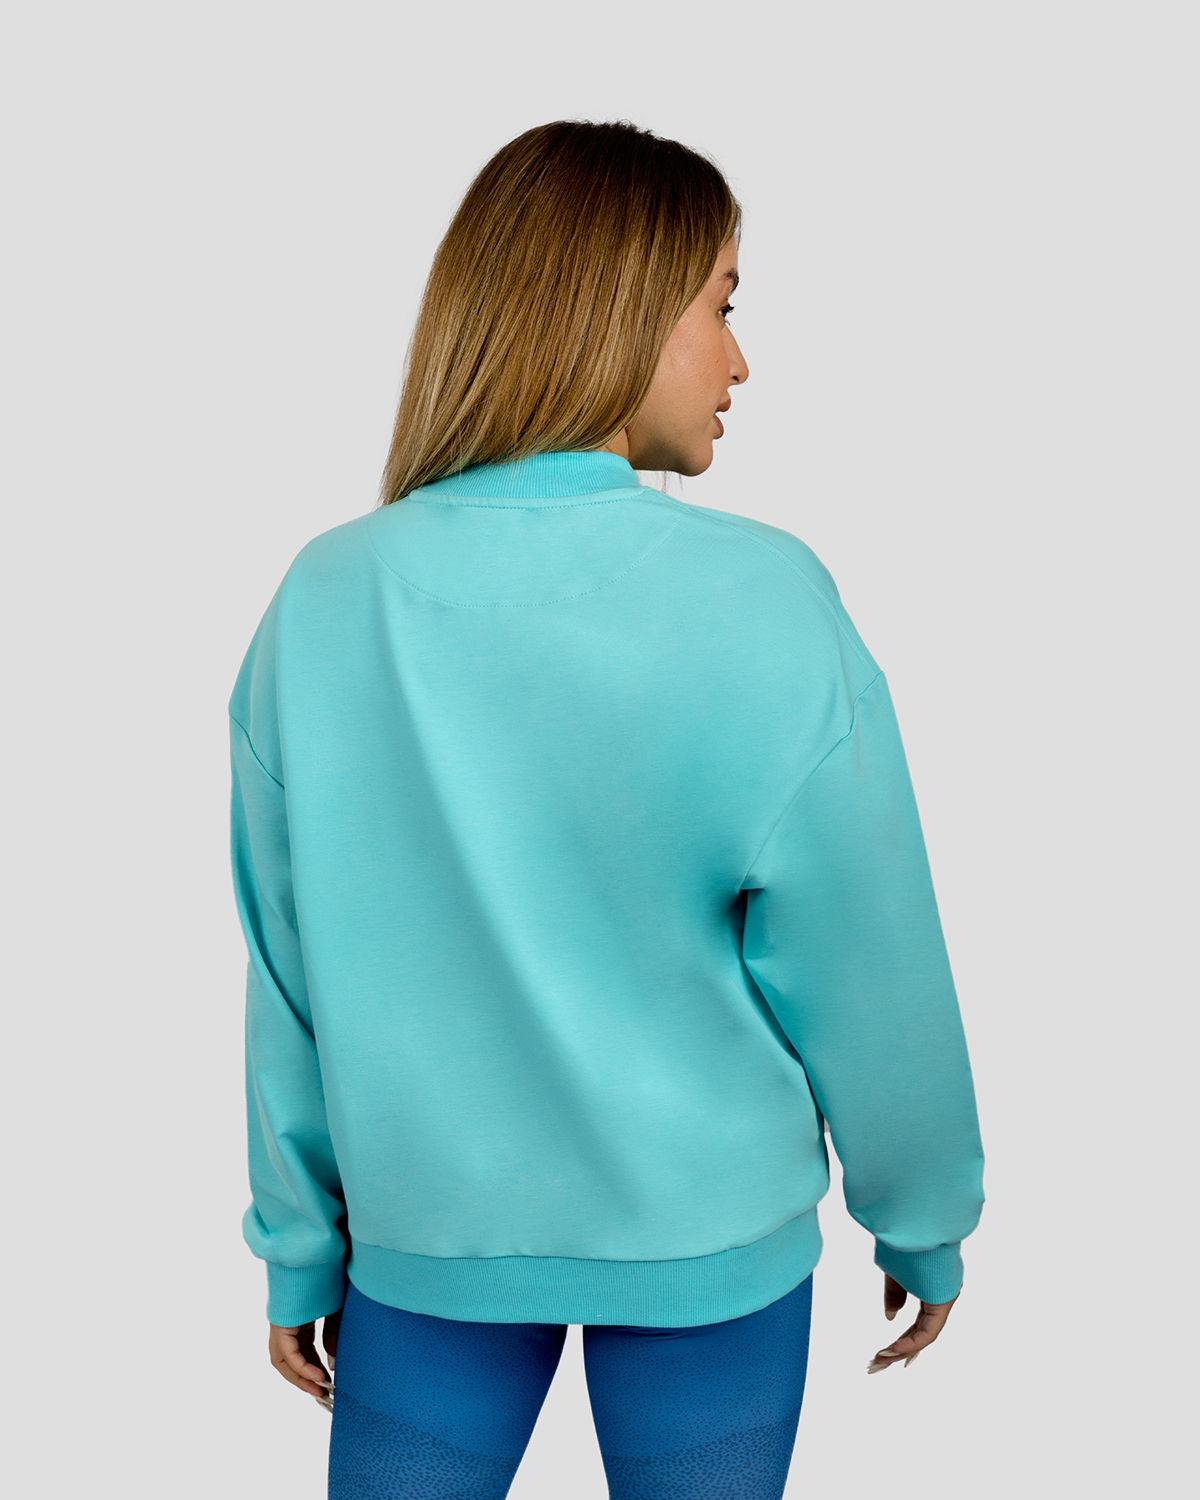 Atum women's ultra sweatshirt